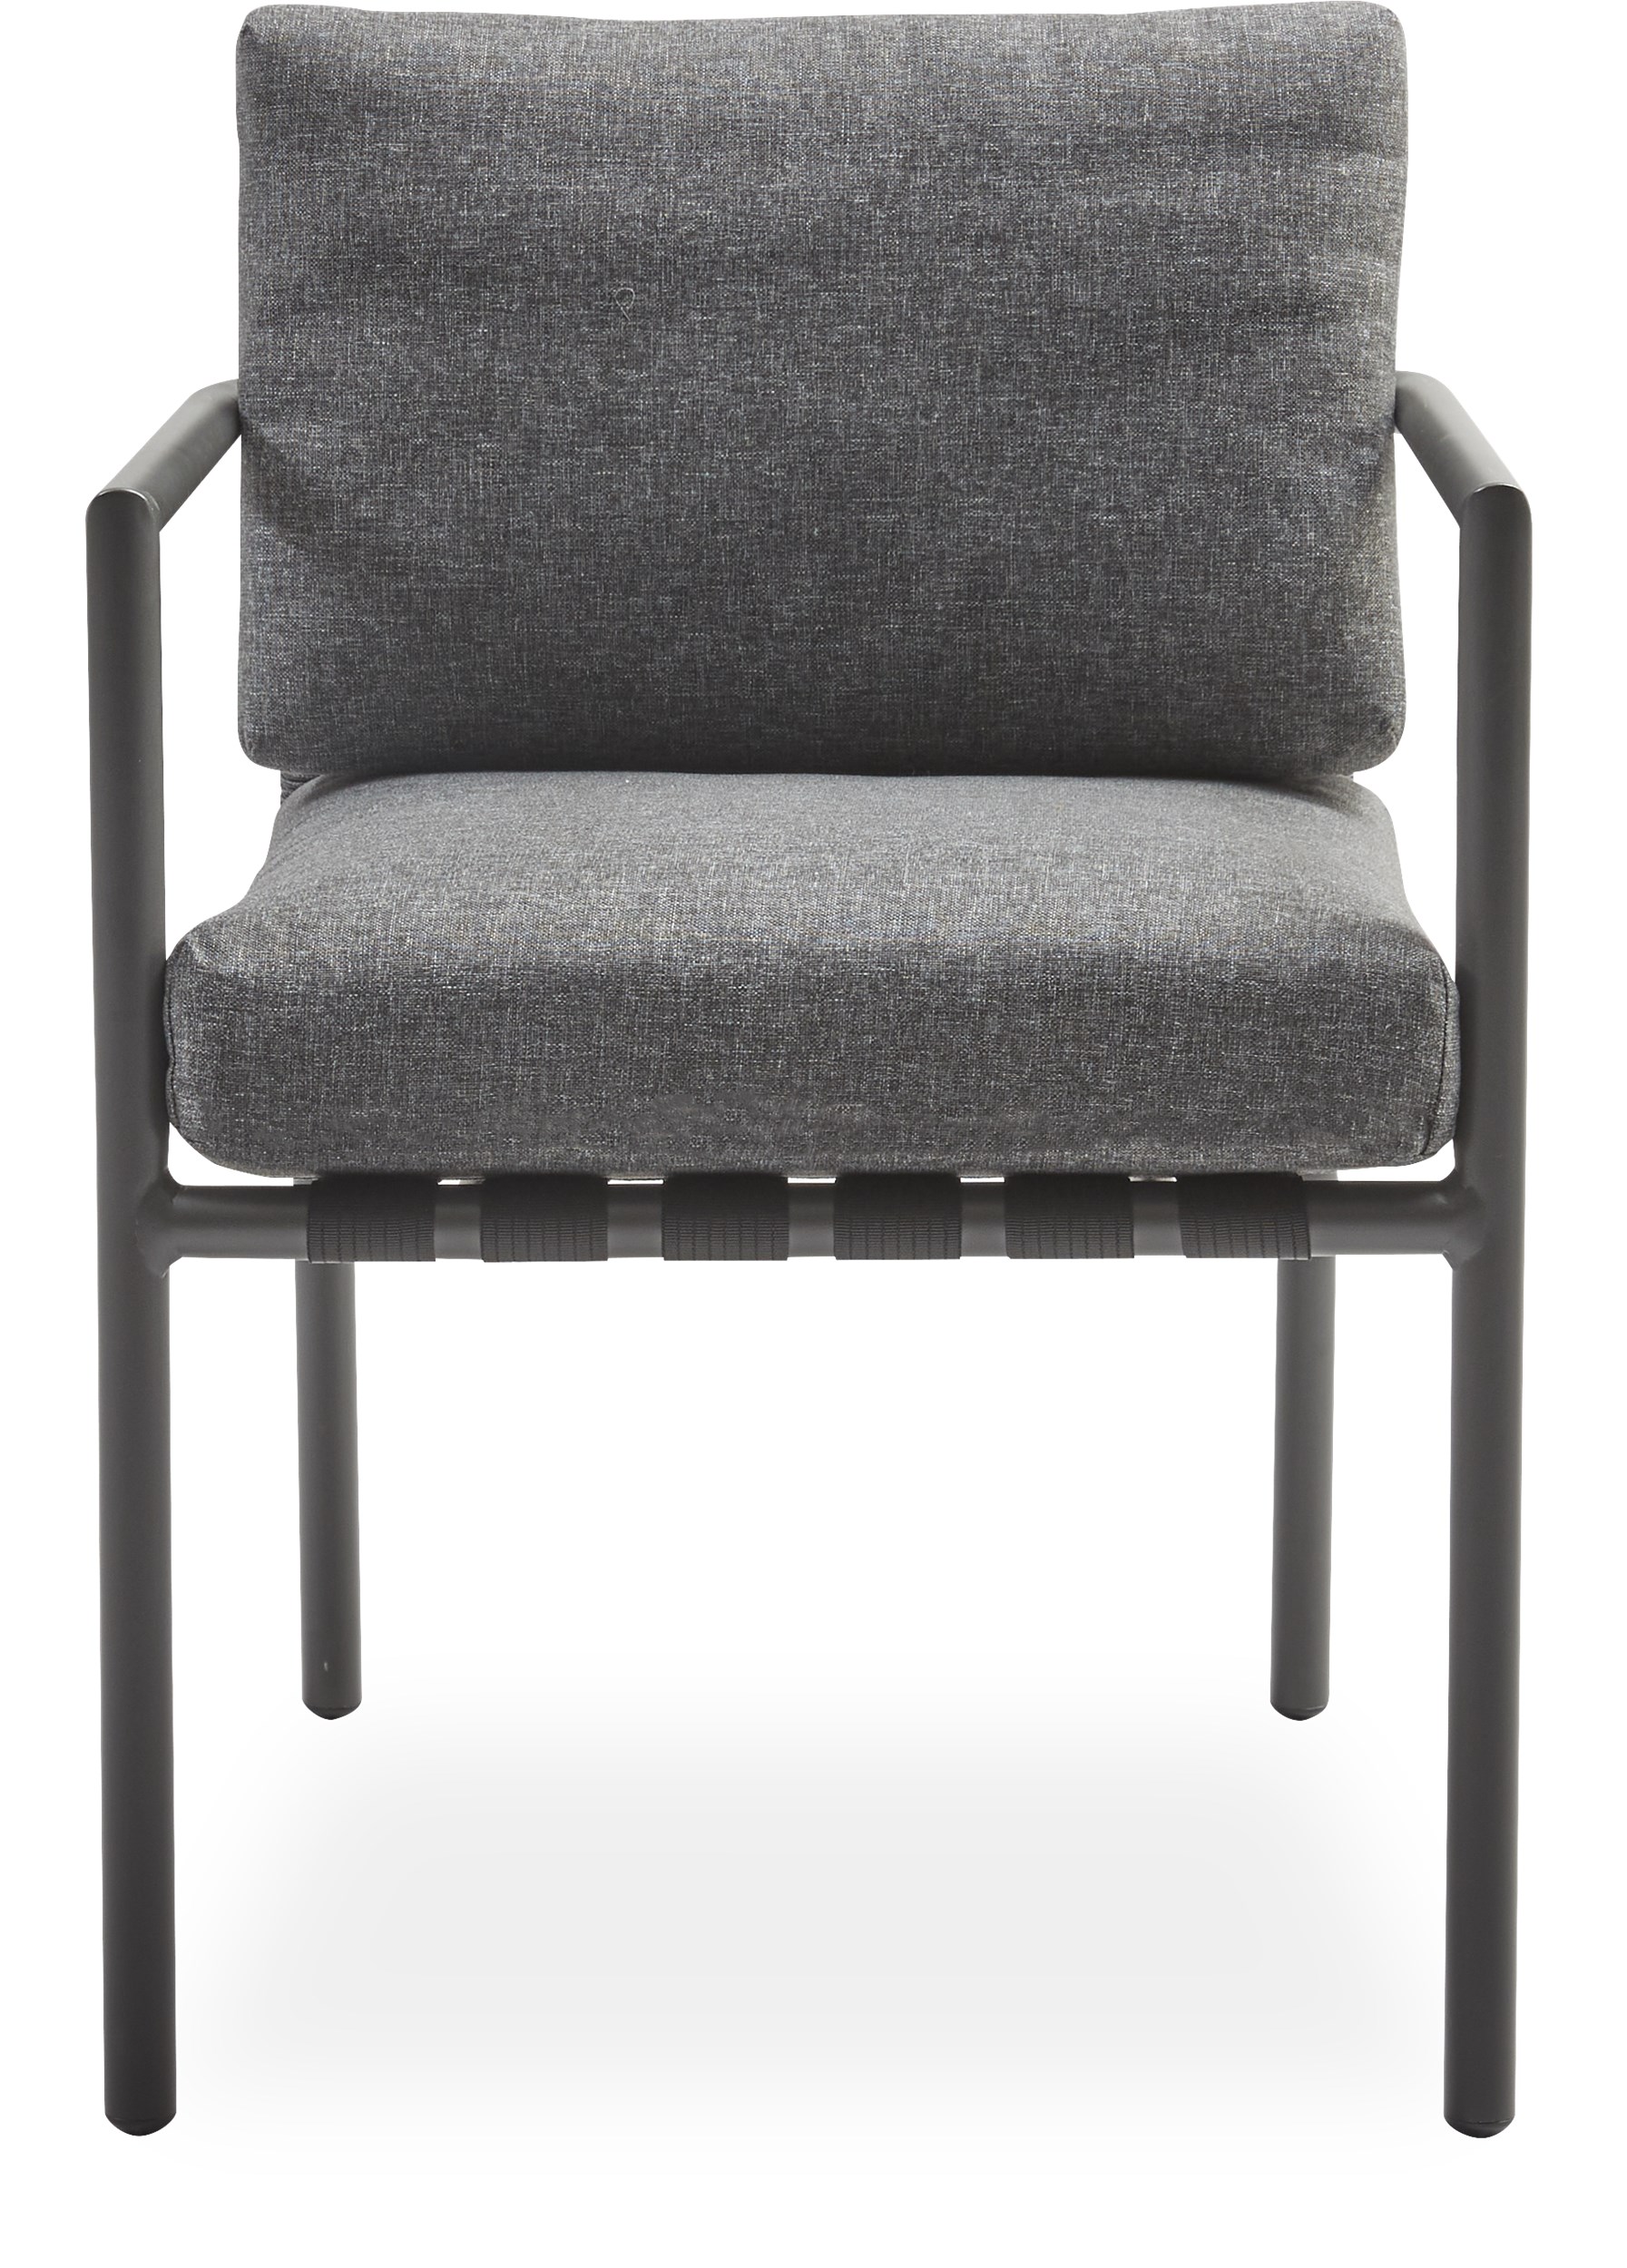 Horizon Trädgårdsstol - Sits med flätade band i polyester, stomme i mörkgrått aluminium och dynor i mörkgrå 190 g olefin